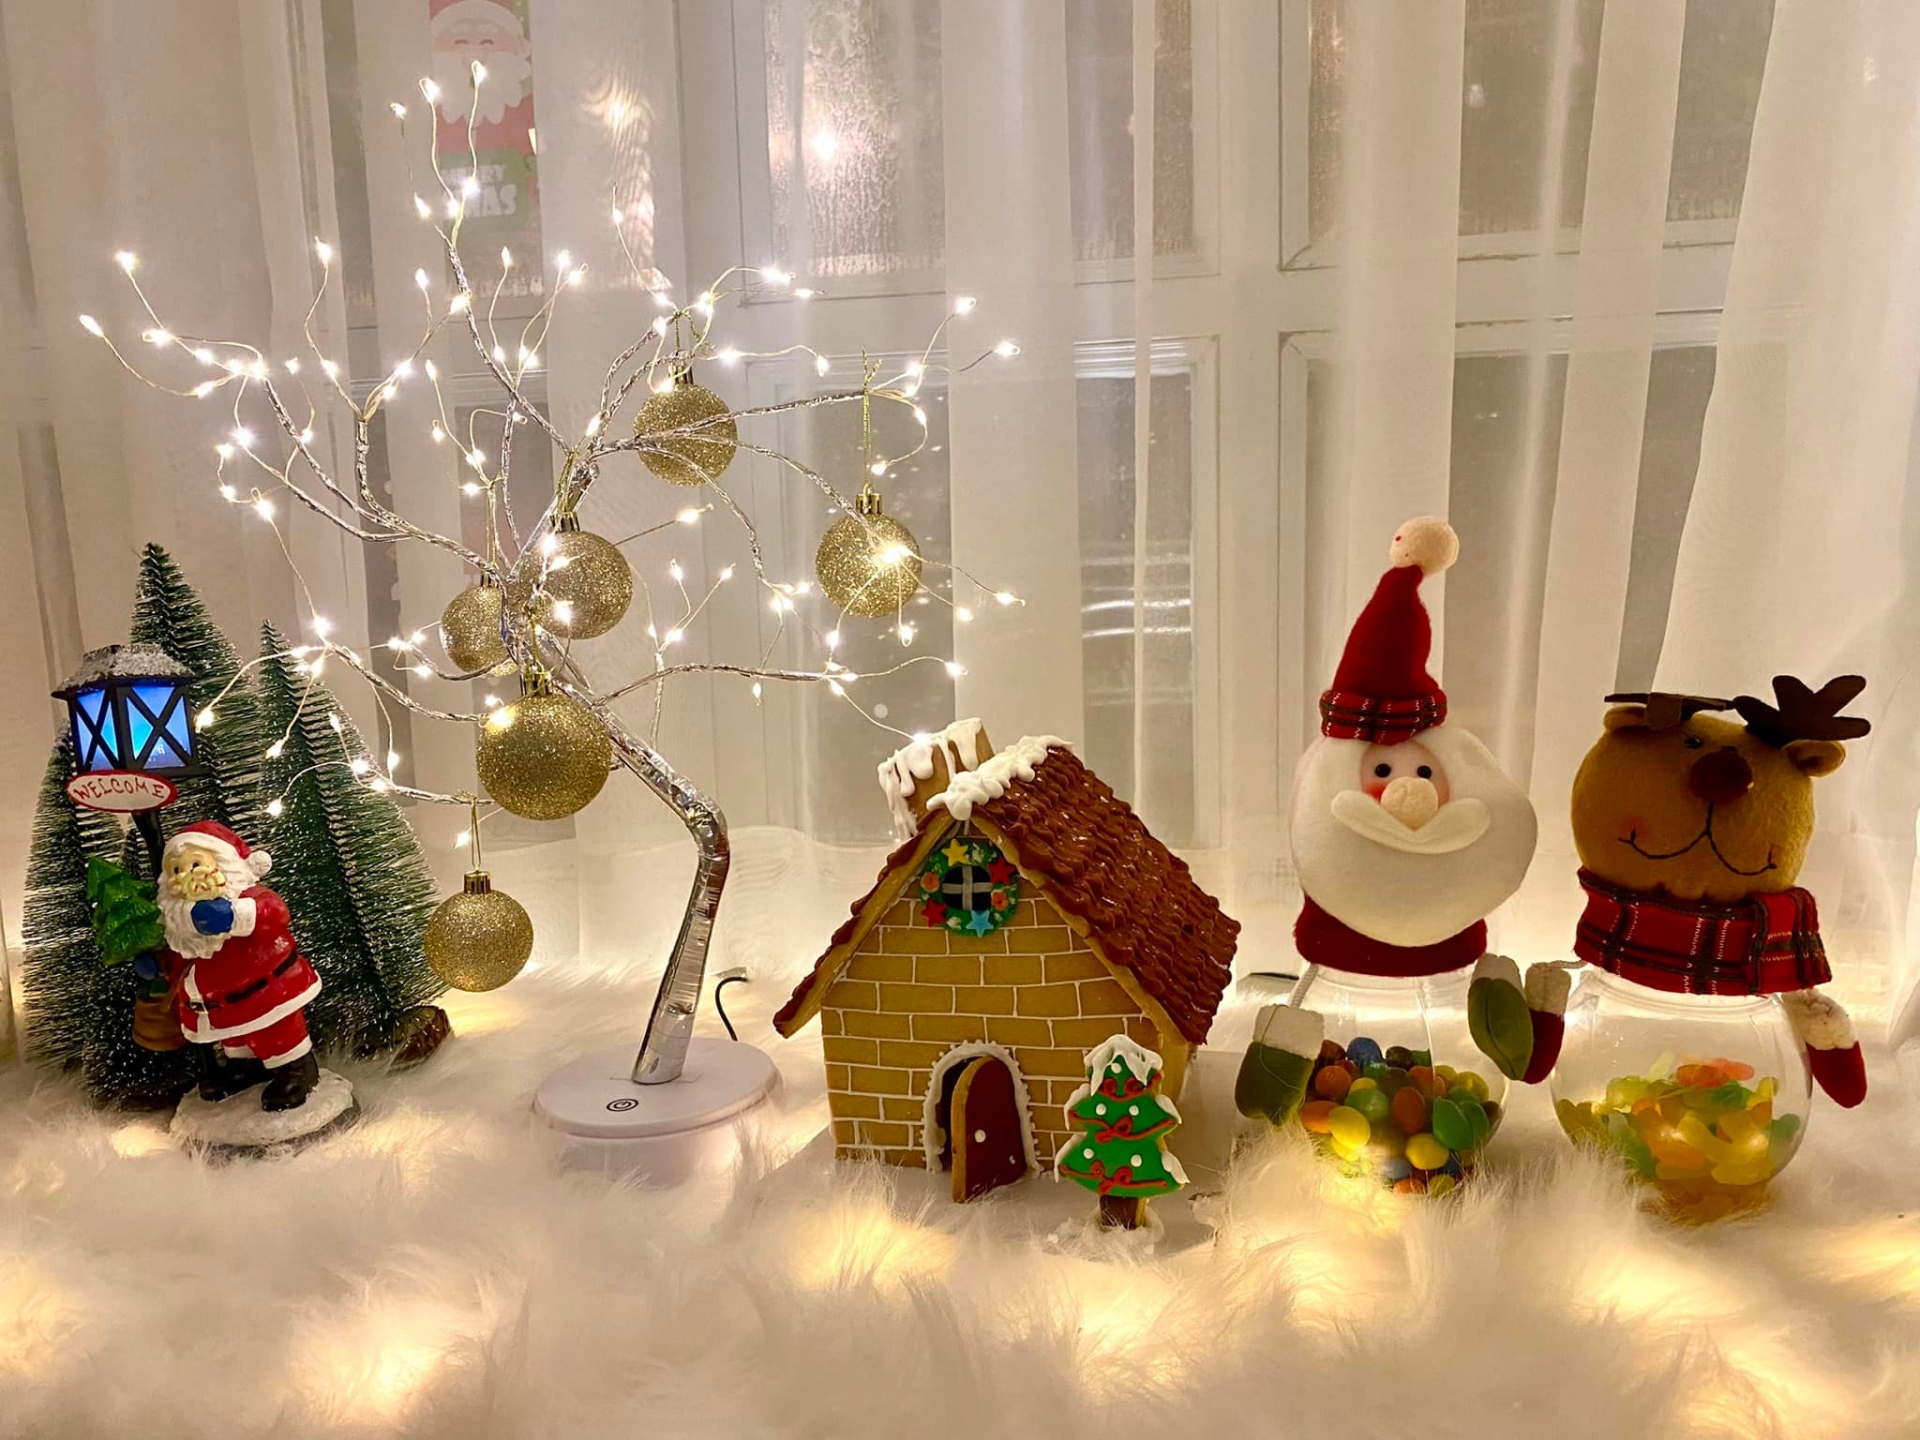 Ngôi làng Giáng sinh với cây thông lấp lánh, nhà bánh gừng, người tuyết đựng đầy kẹo.